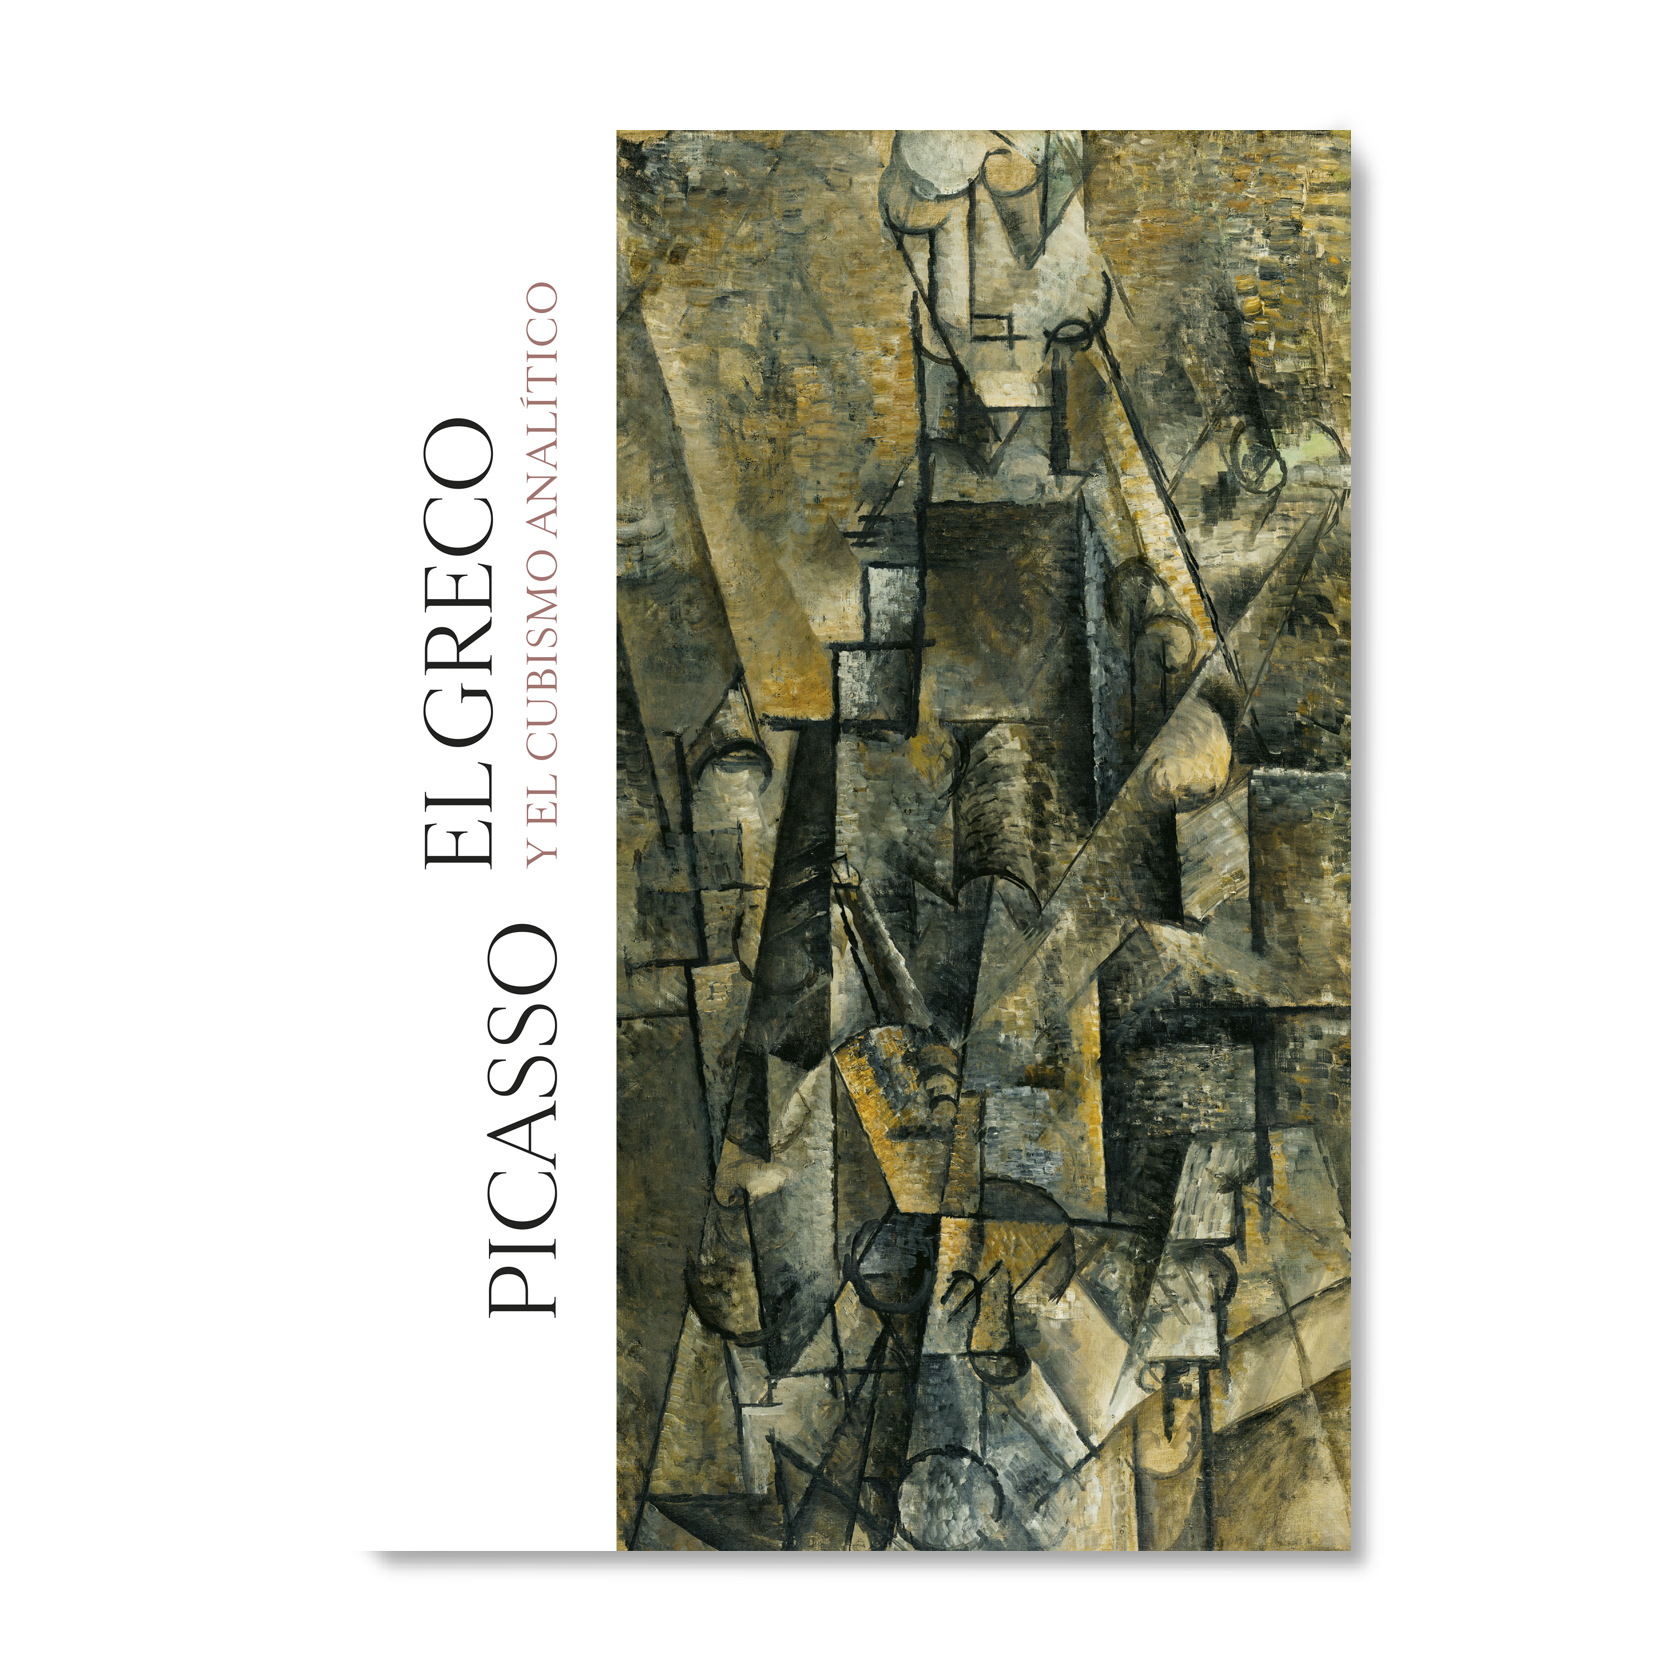 Picasso, el Greco y el cubismo analítico